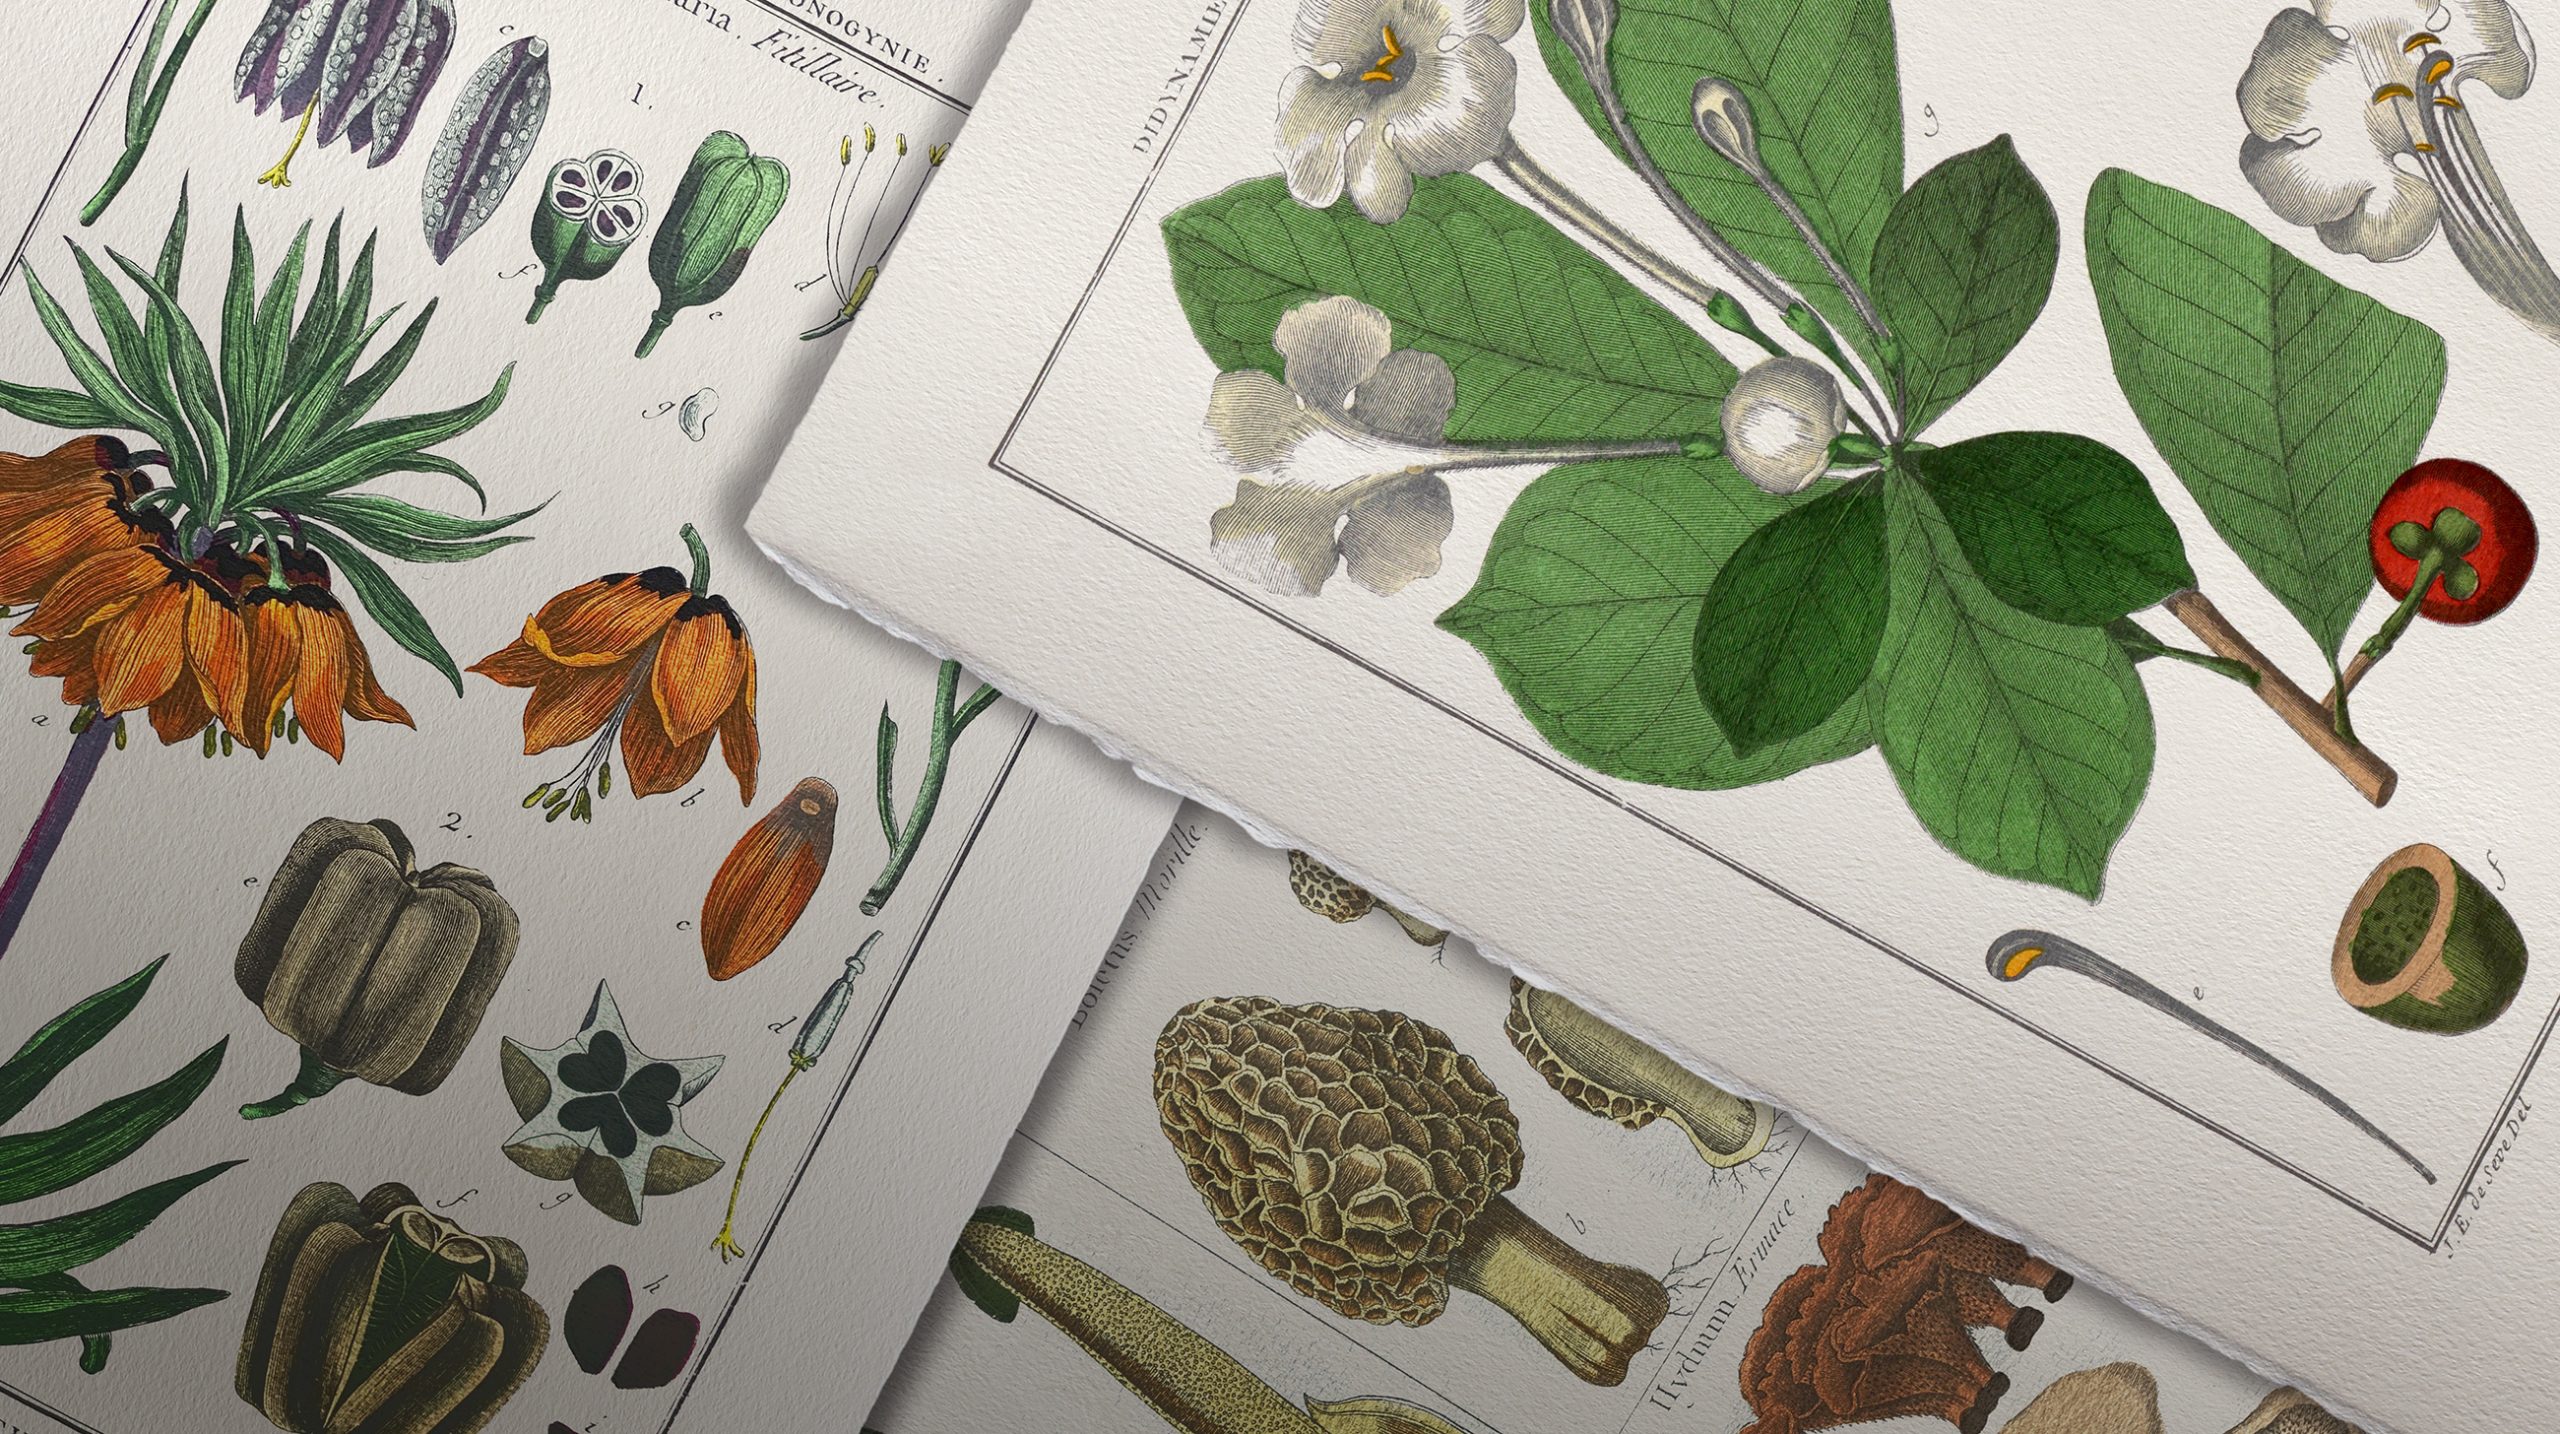 Colección Láminas de botánica